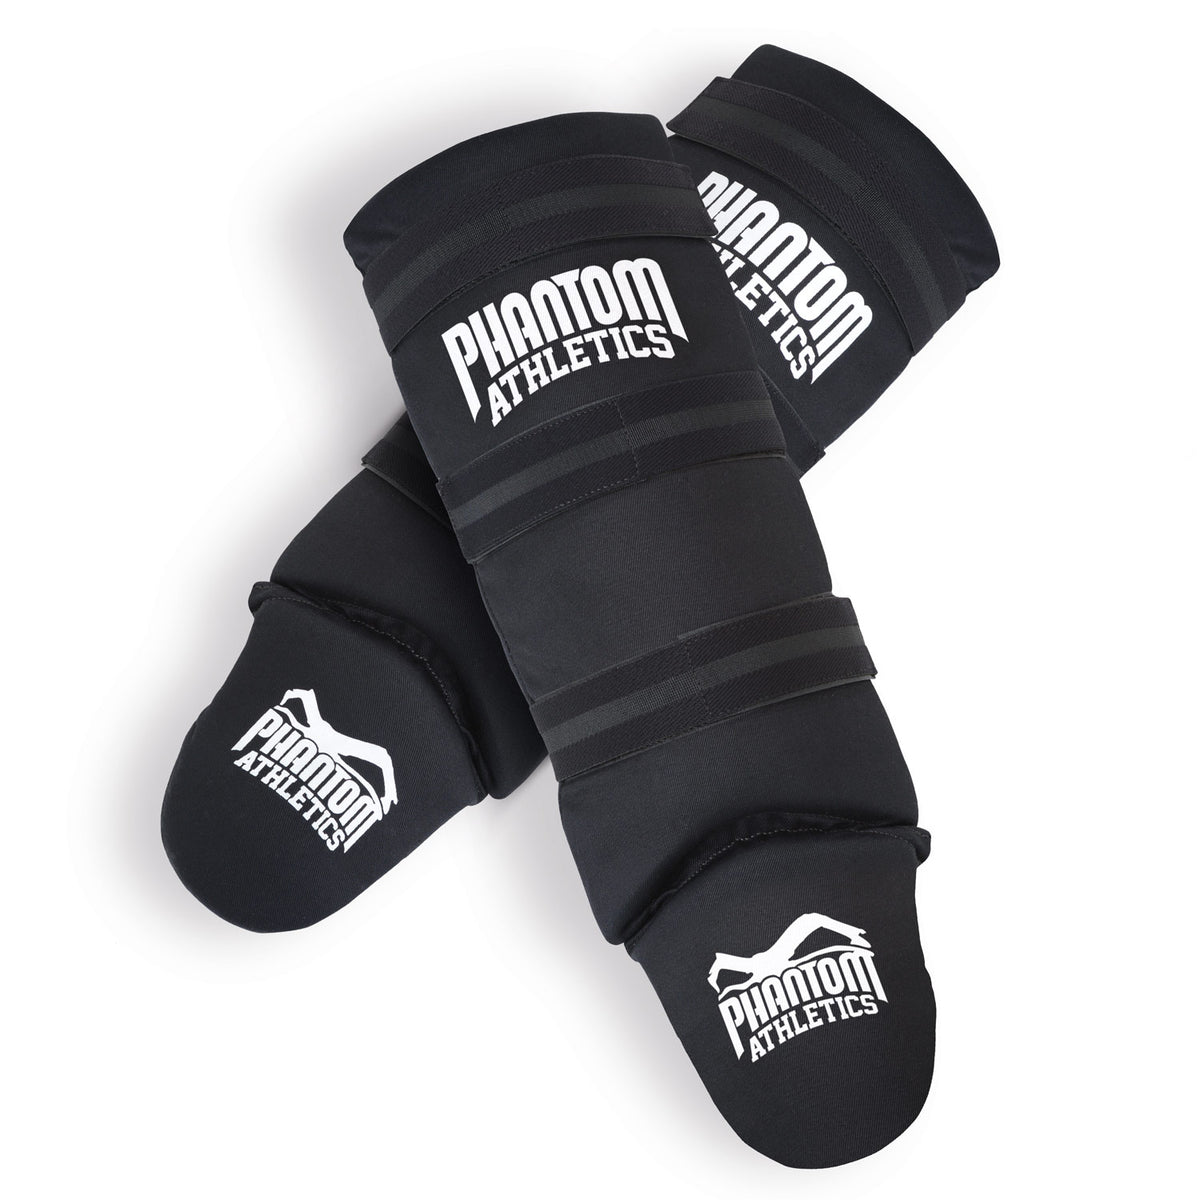 Die Phantom Impact Basic Schienbeinschoner für Kampfsport bieten eine hervorragende Dämpfung im Training und Sparring.